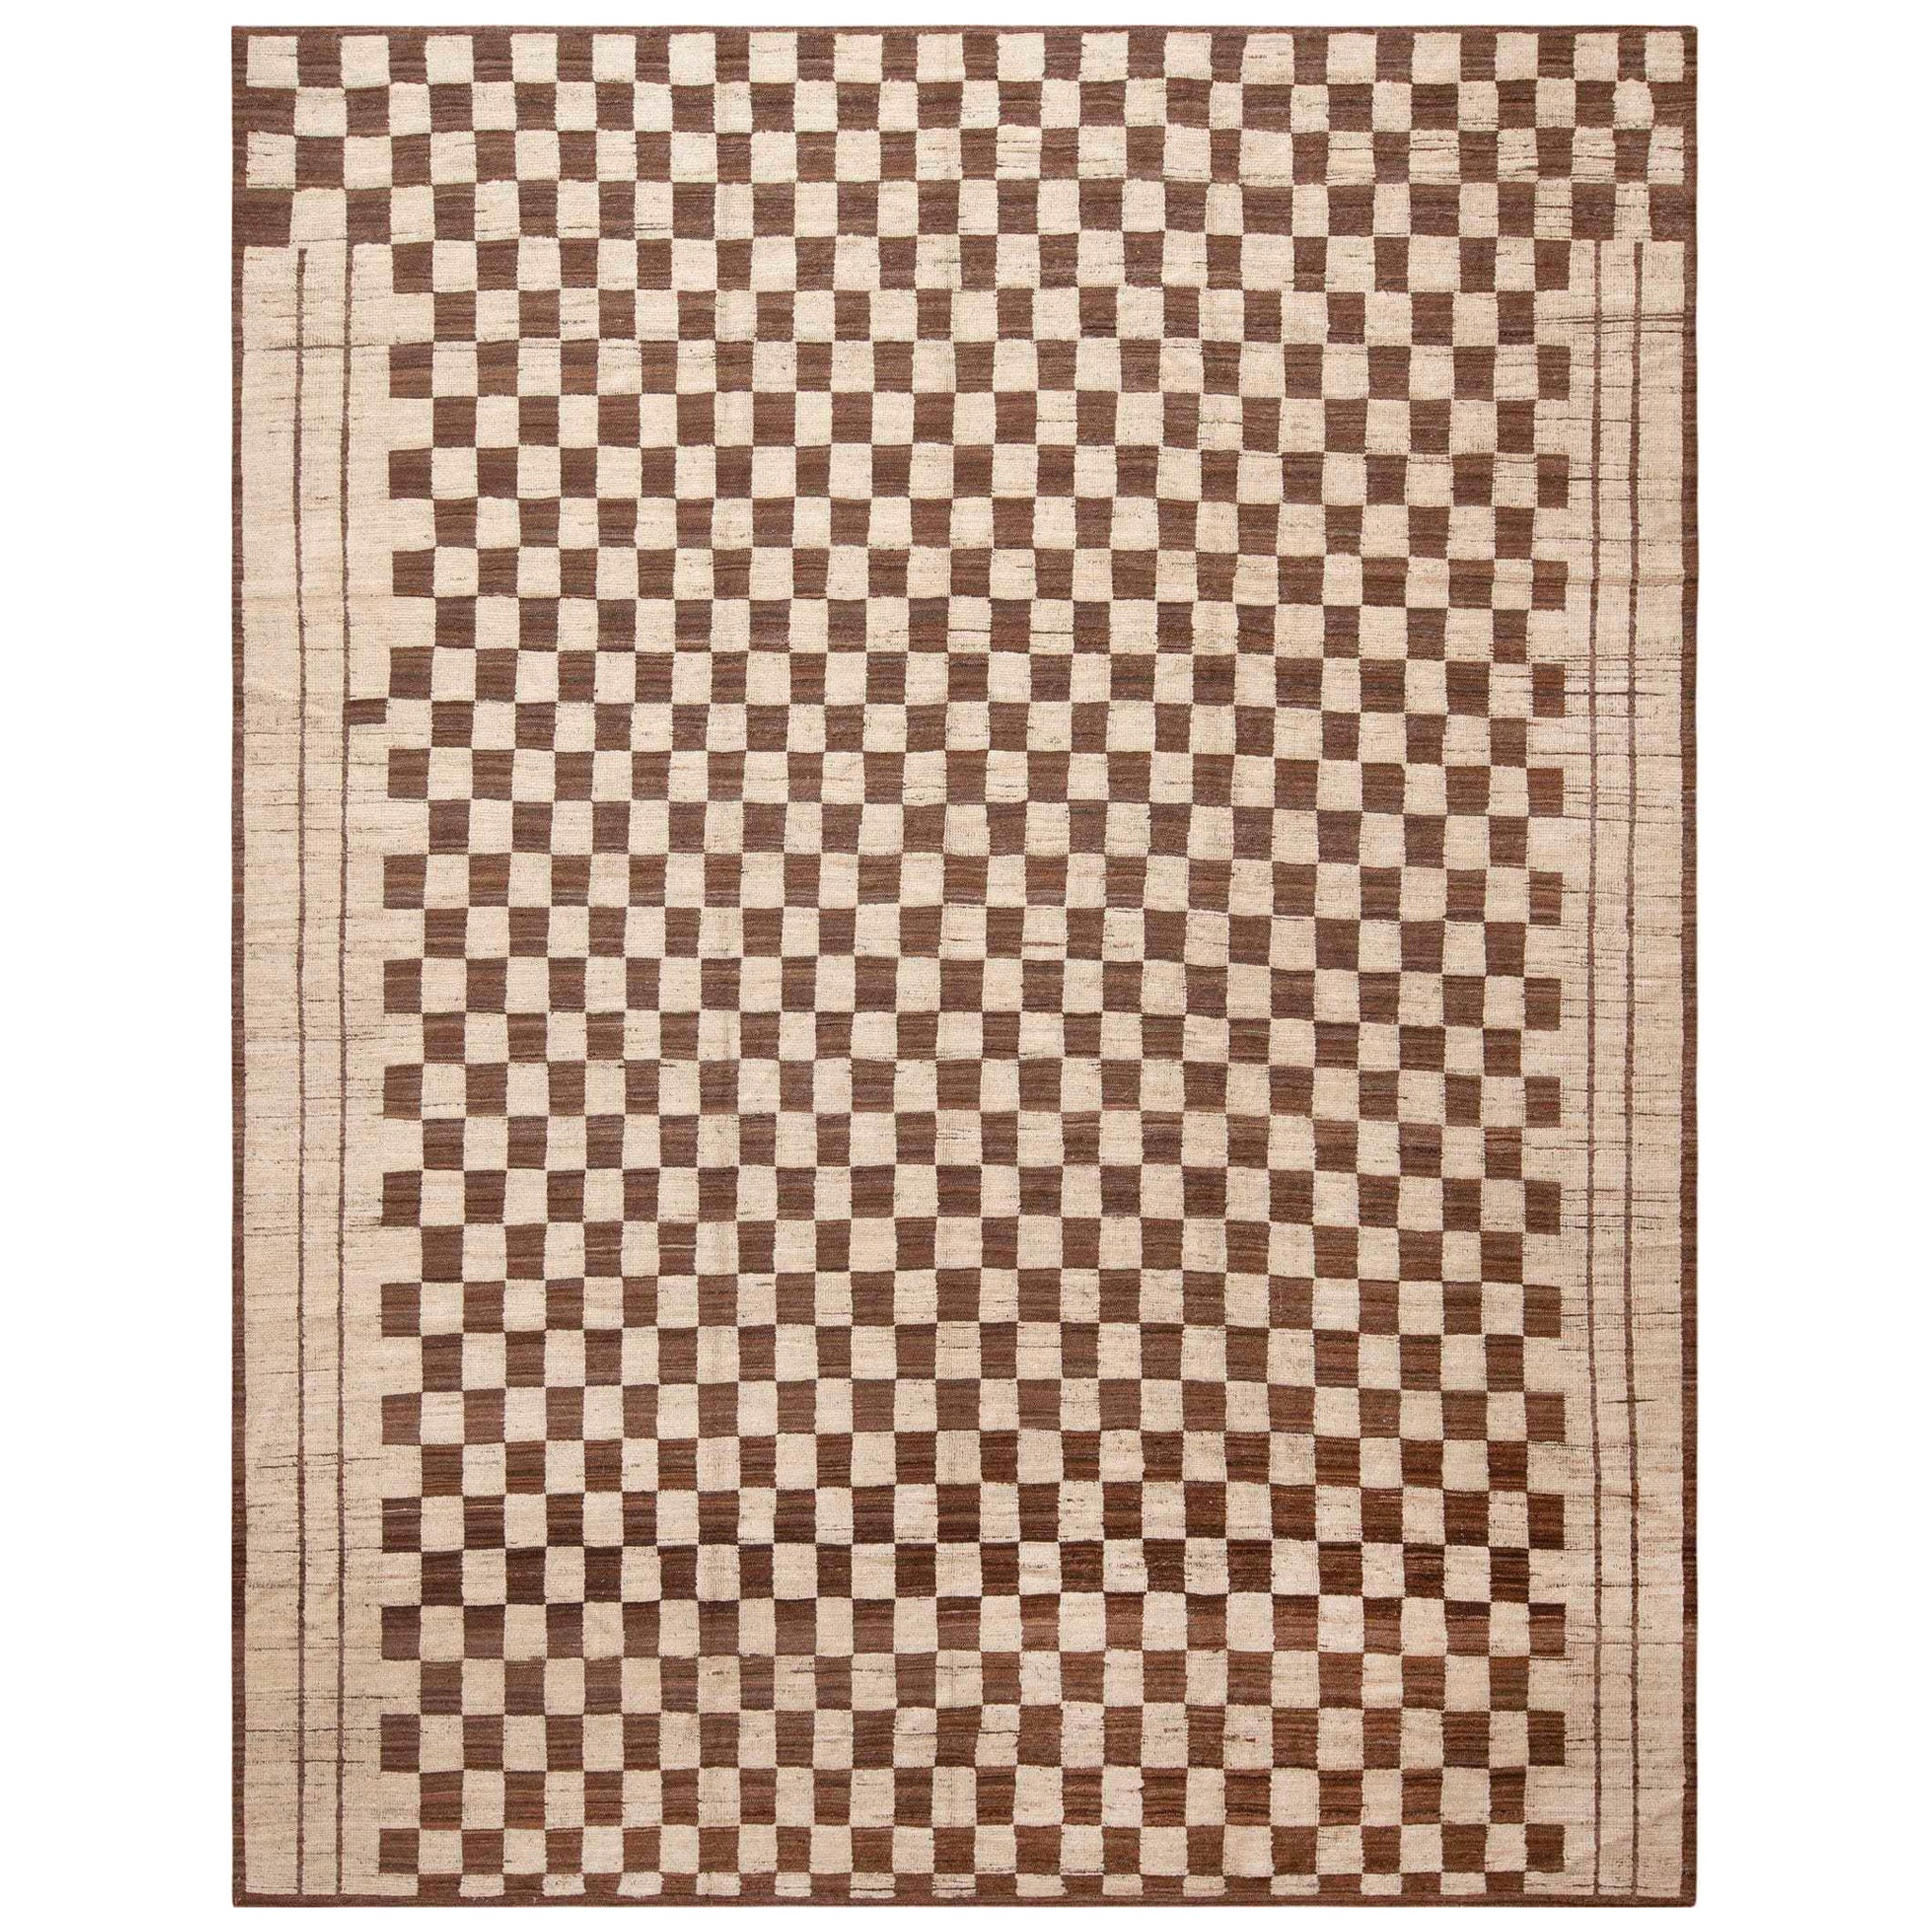 Moderner marokkanischer Teppich der Nazmiyal Kollektion im Schachbrettdesign 9'5" x 12'3"